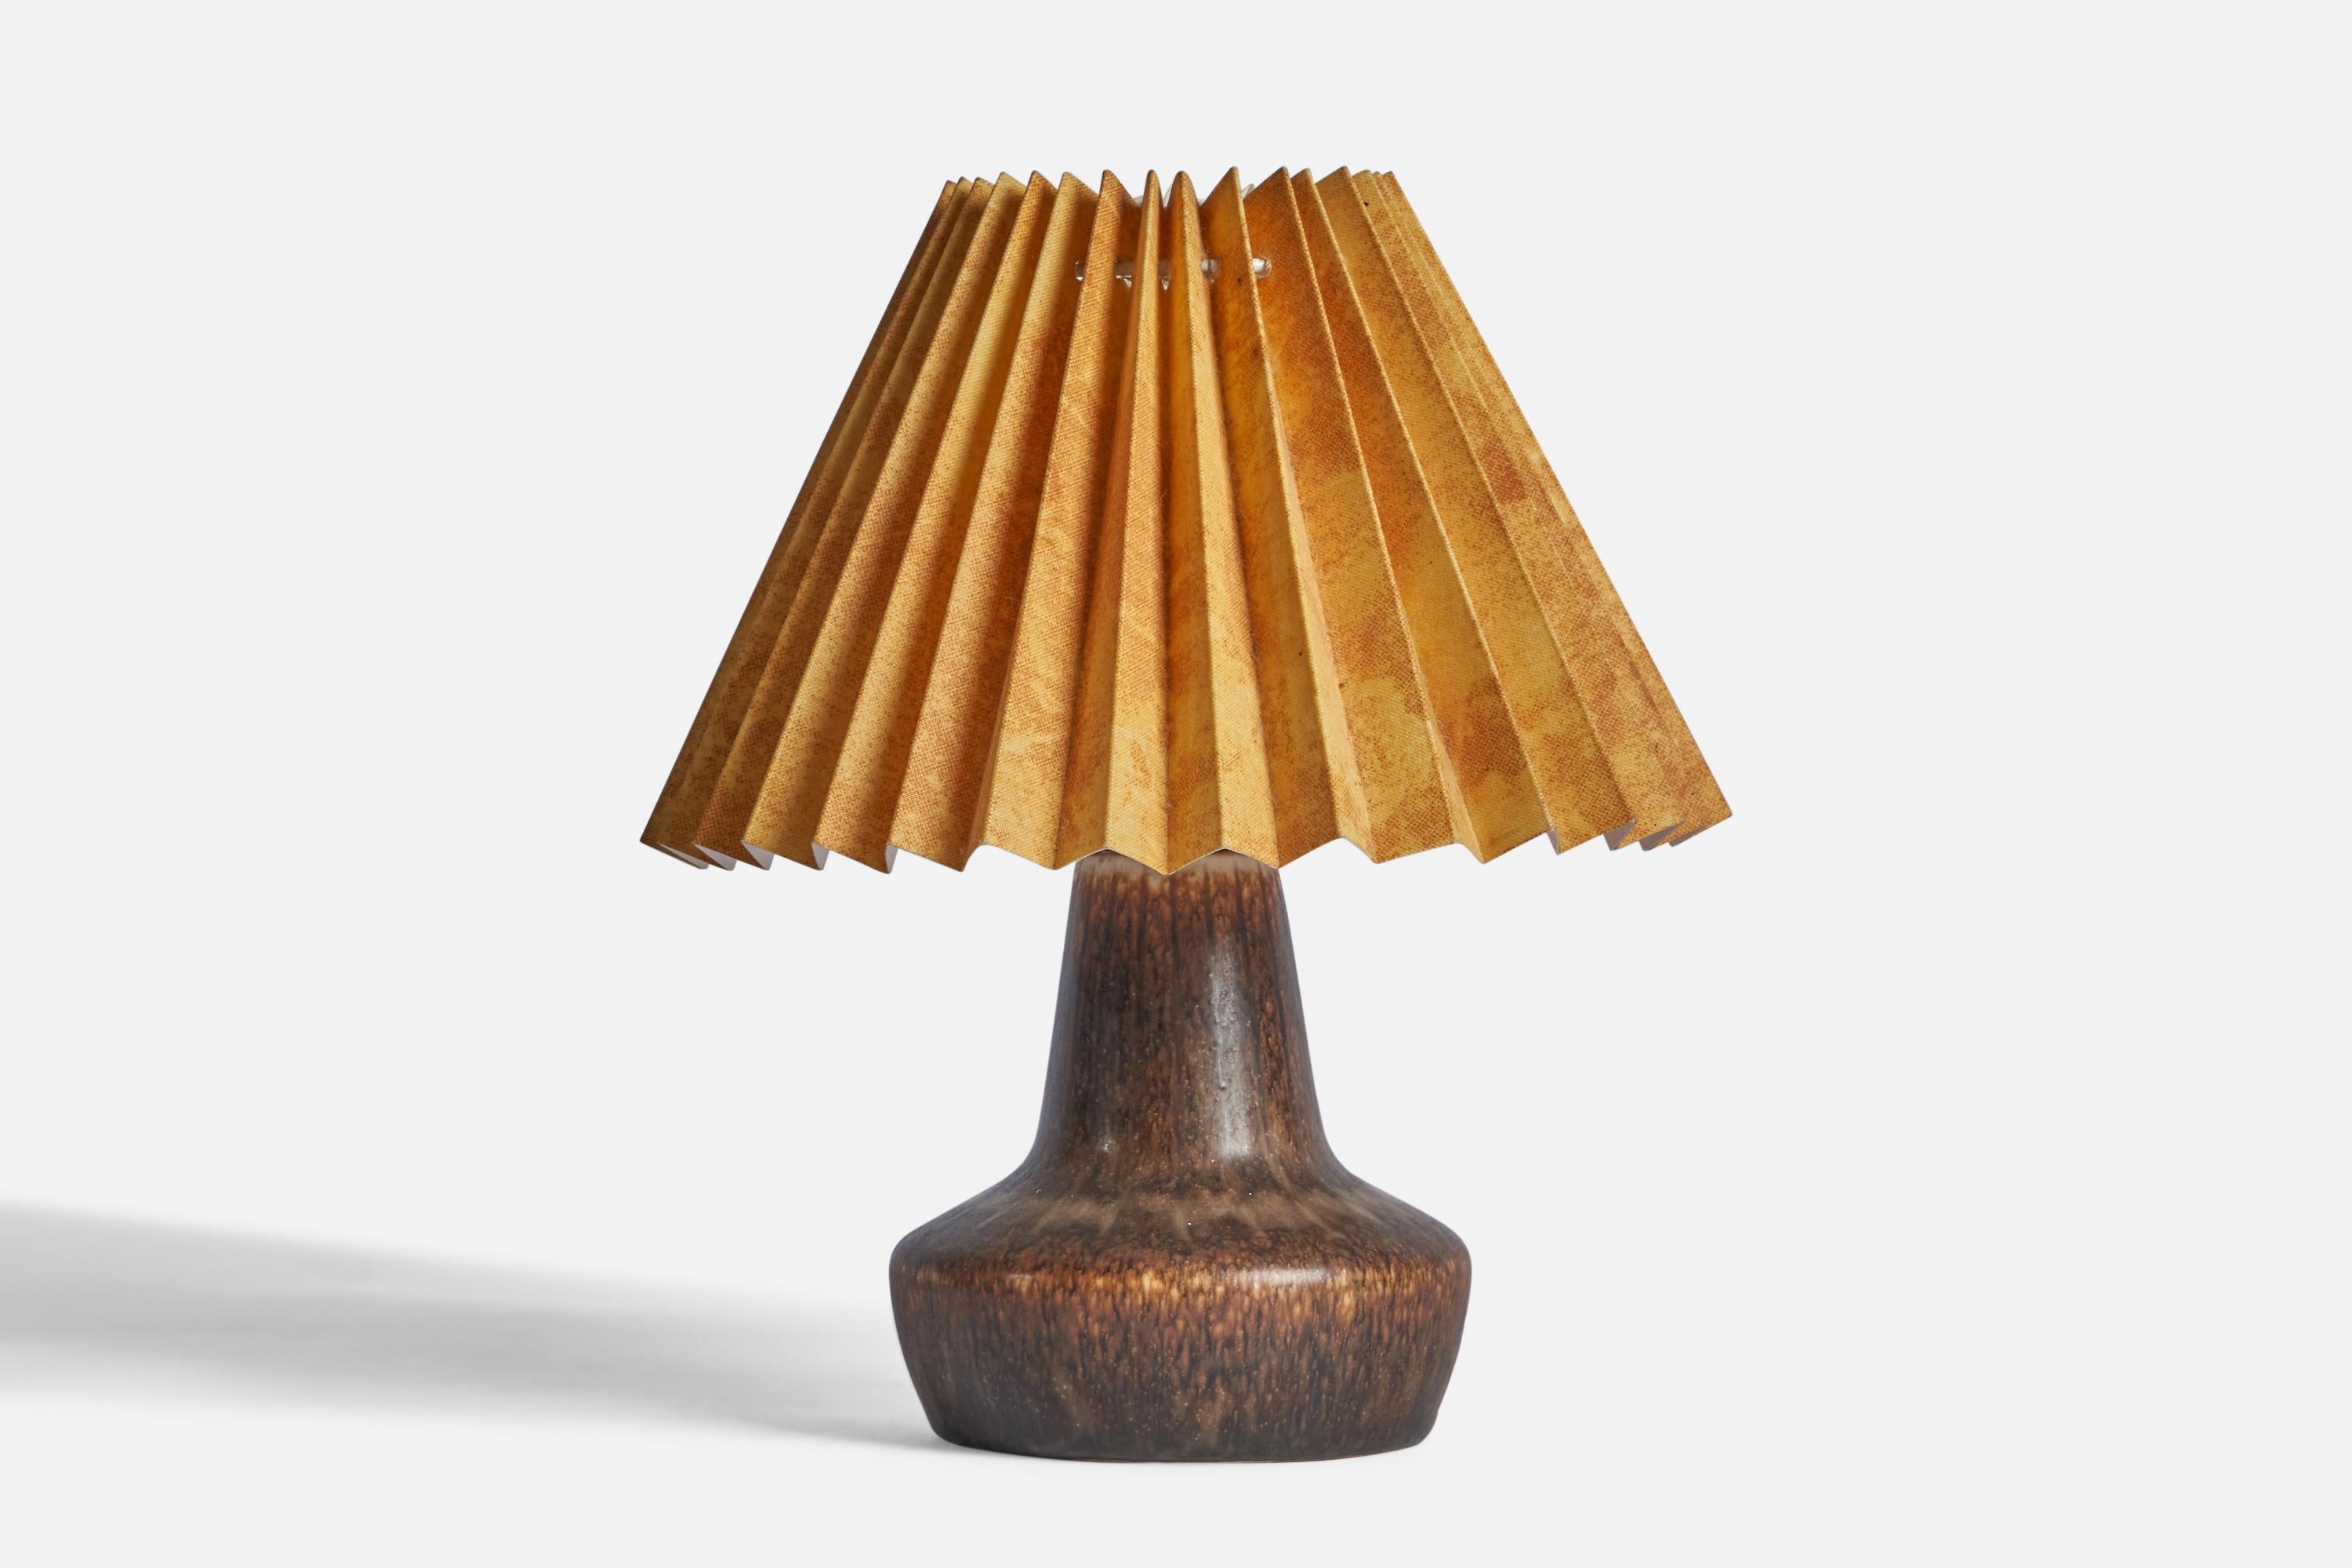 Lampe de table en grès émaillé brun et papier jaune, conçue par Gunnar Nylund et produite par Rörstrand, Suède, années 1940.

Dimensions globales (pouces) : 9.5